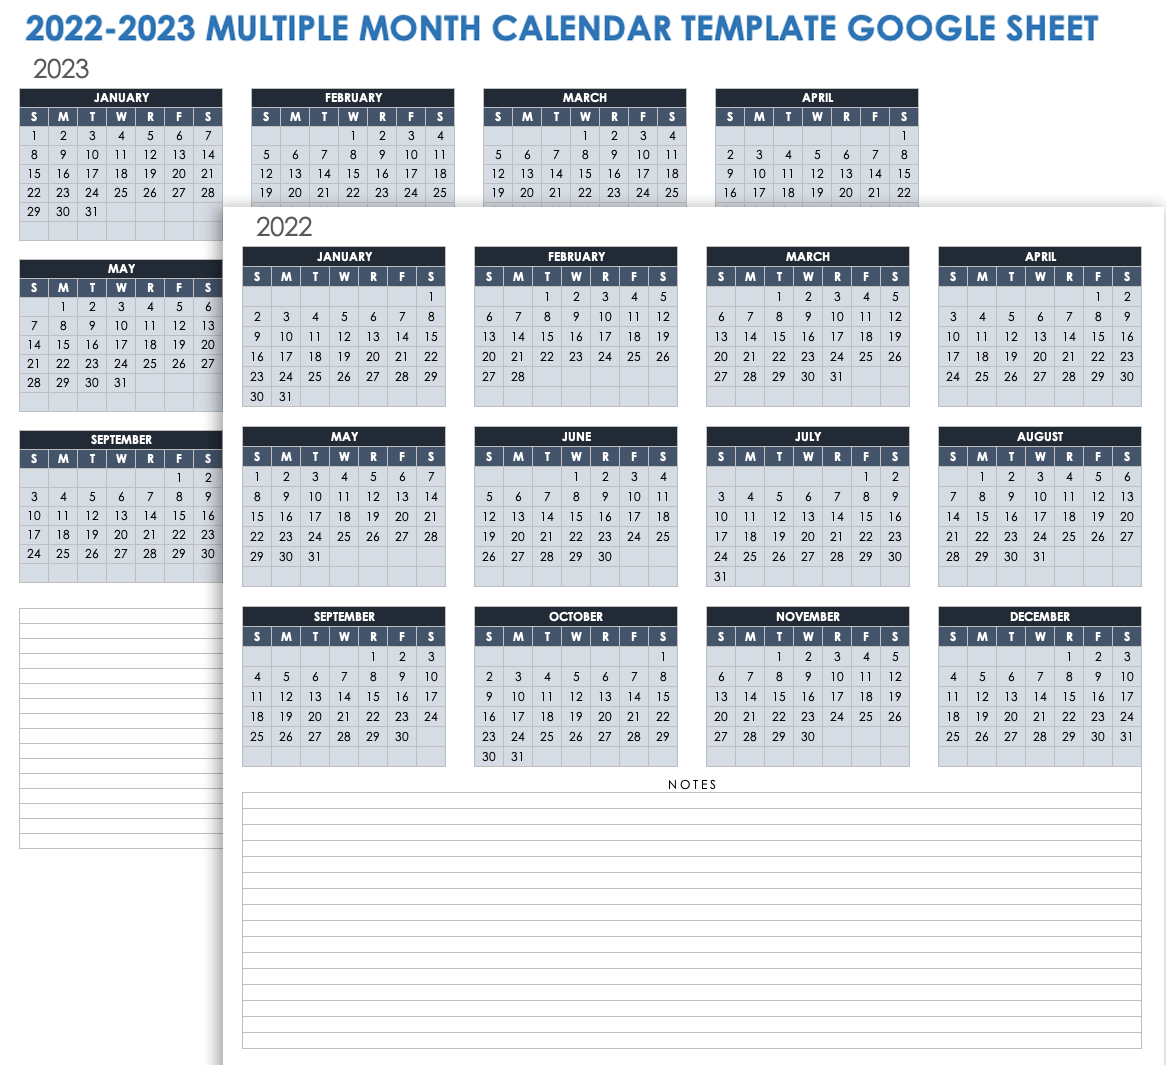 202023多月日历谷歌表模板